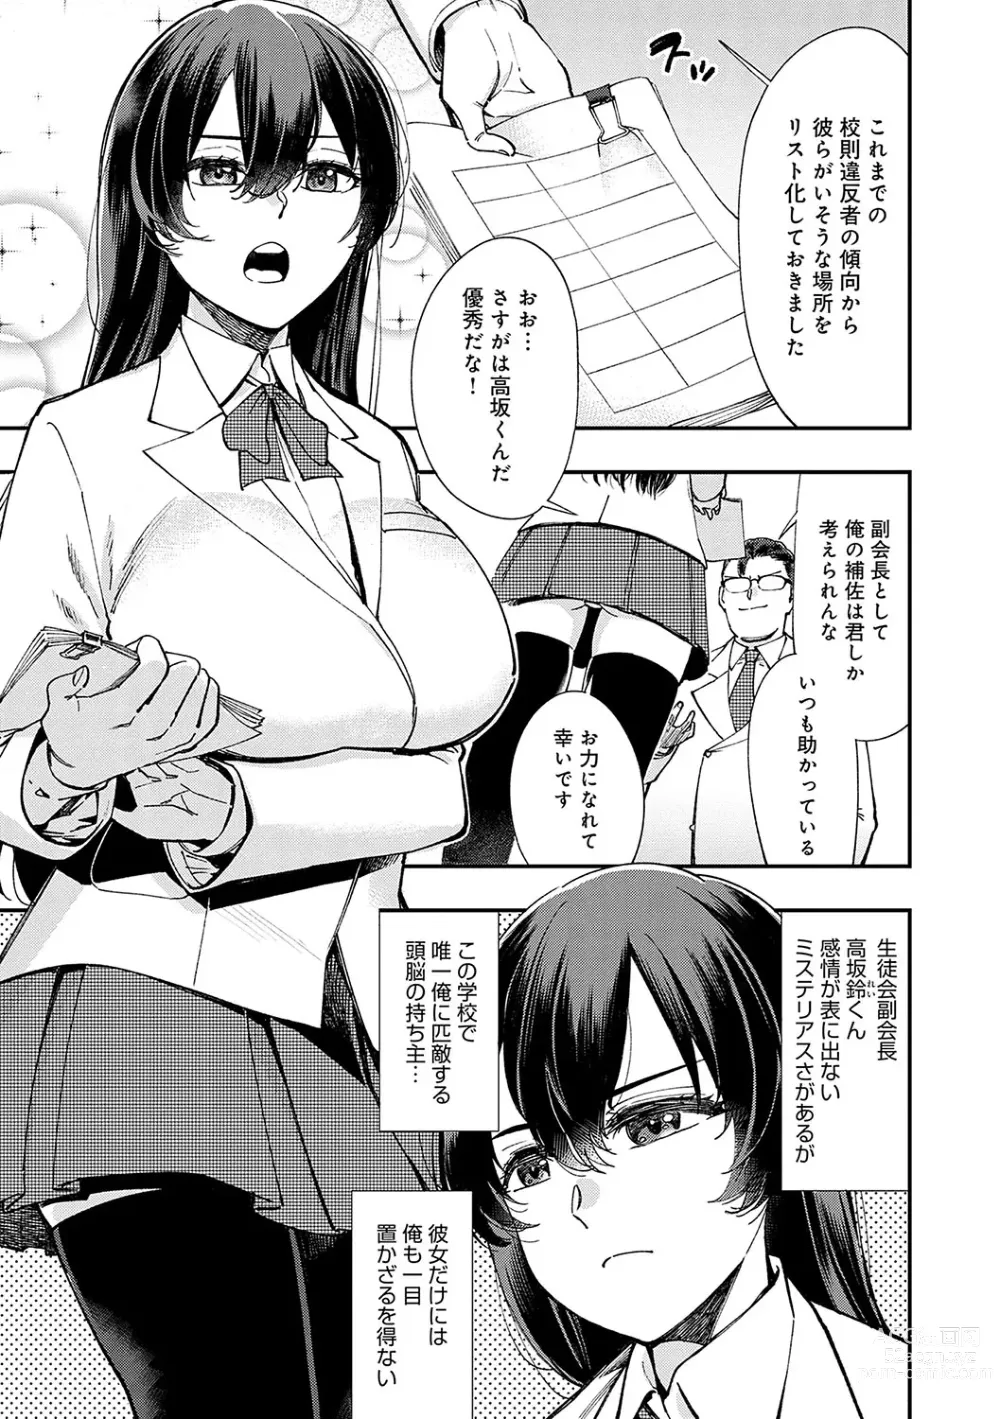 Page 8 of manga Kashikoi Oppai